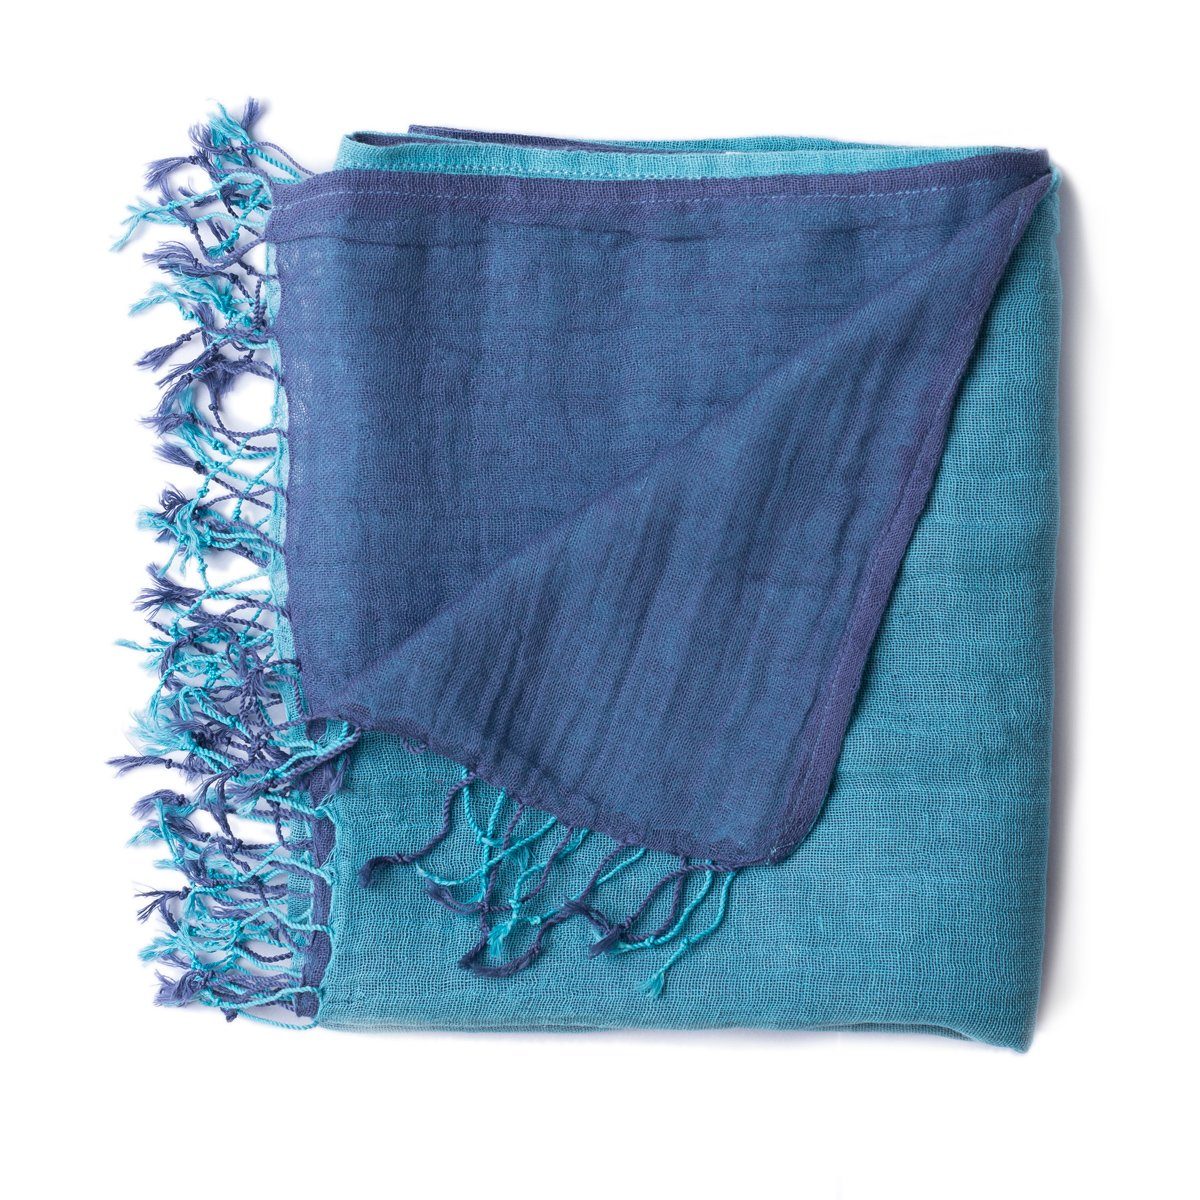 PANASIAM Halstuch elegantes Schultertuch zweifarbig tragbar, oder farbigen in als Stola Schal Designs hellblau auch blau mit Fransen kleinen schönen Baumwolle aus